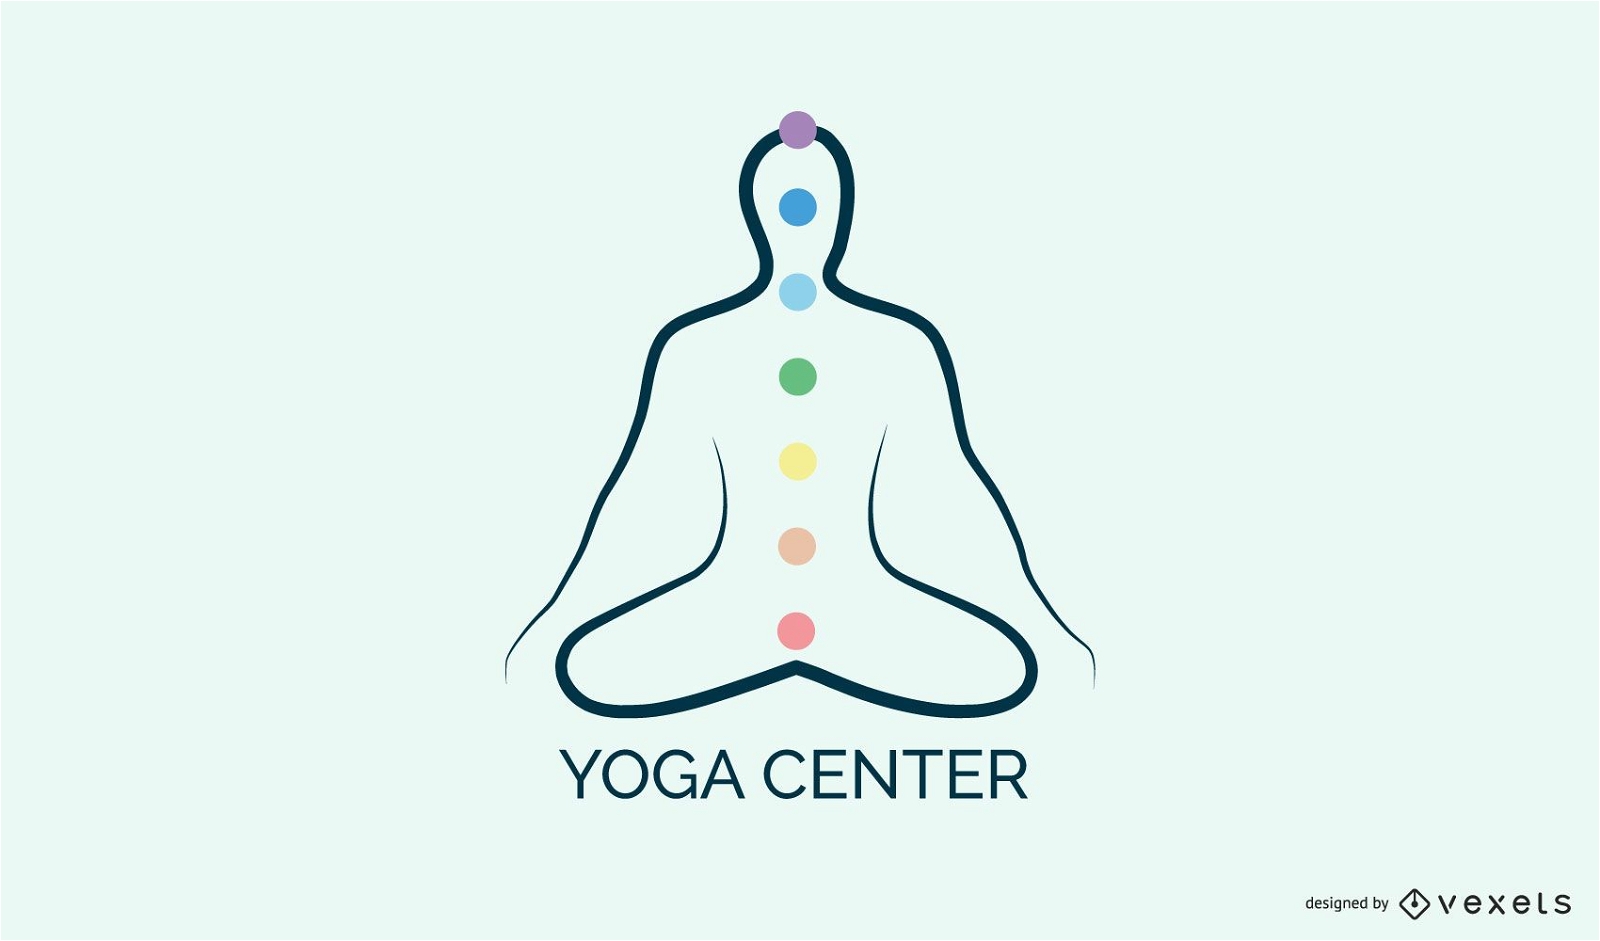 Yoga center logo template